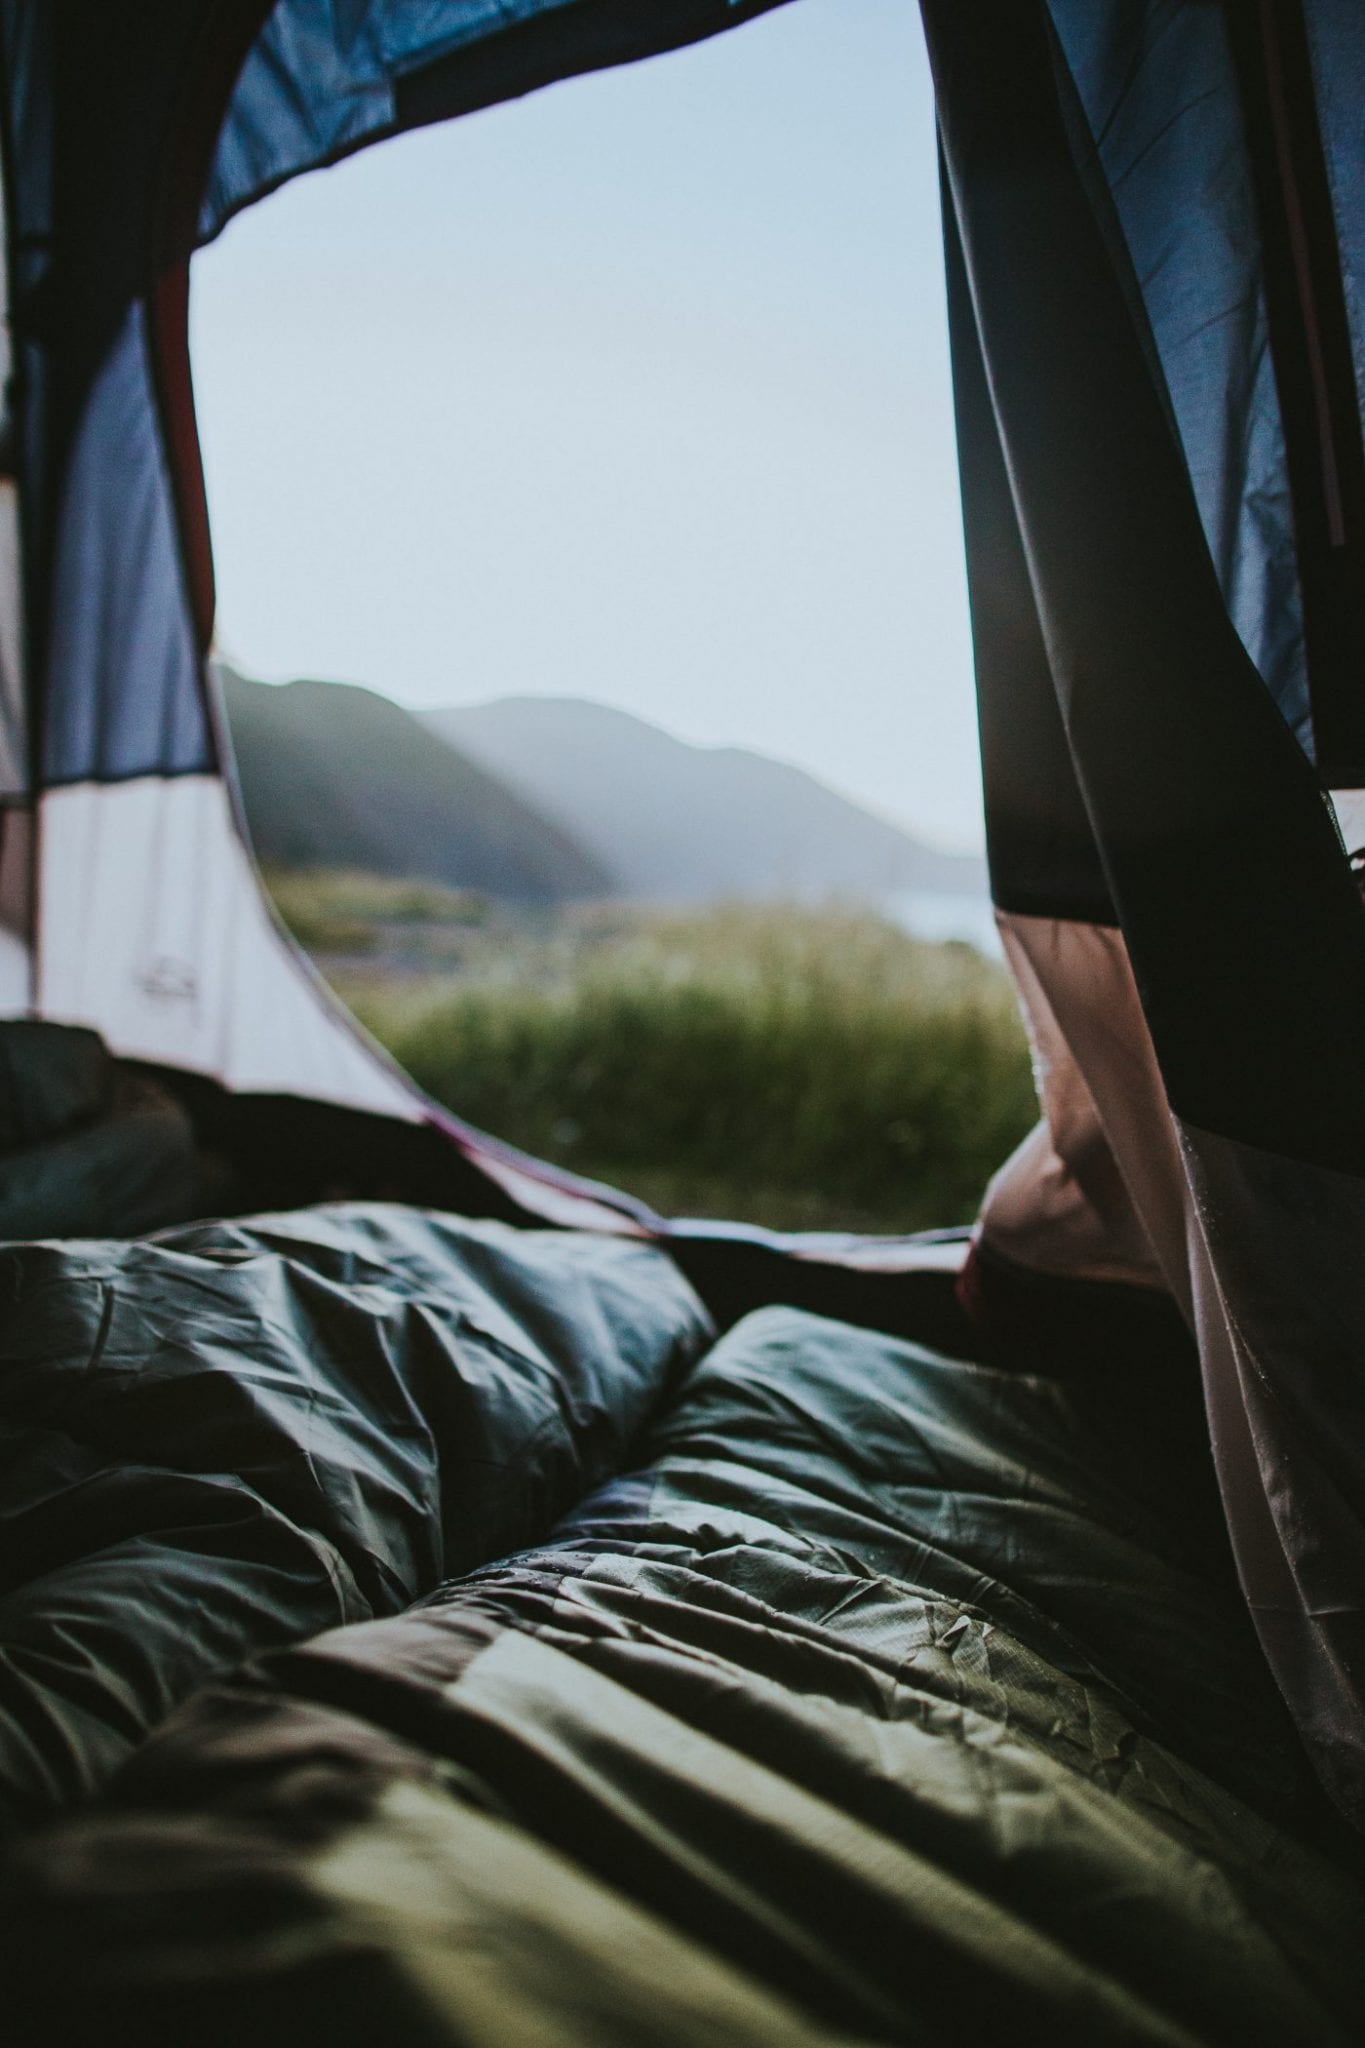 Warm in de slaapzak met uitzicht tijdens het kamperen